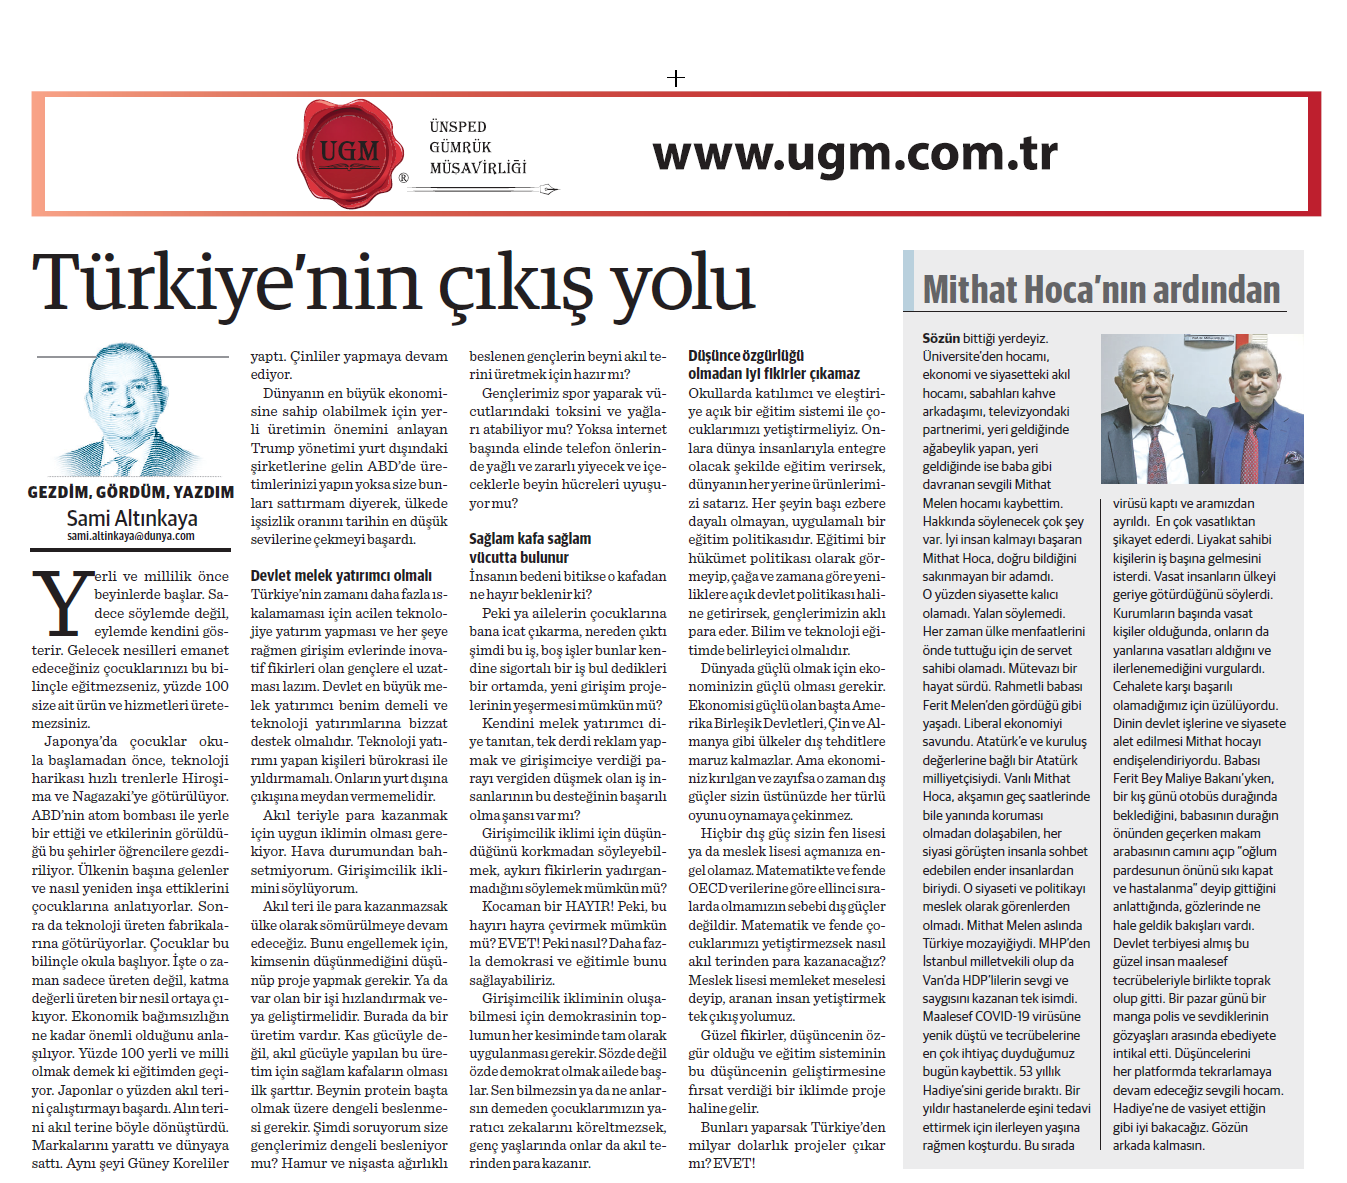 UGM Kurumsal İletişim Direktörümüz Sami Altınkaya'nın " Türkiye’nin çıkış yolu " başlıklı yazısı, 16.11.2020 tarihinde Dünya Gazetesi'nde yayınlandı.